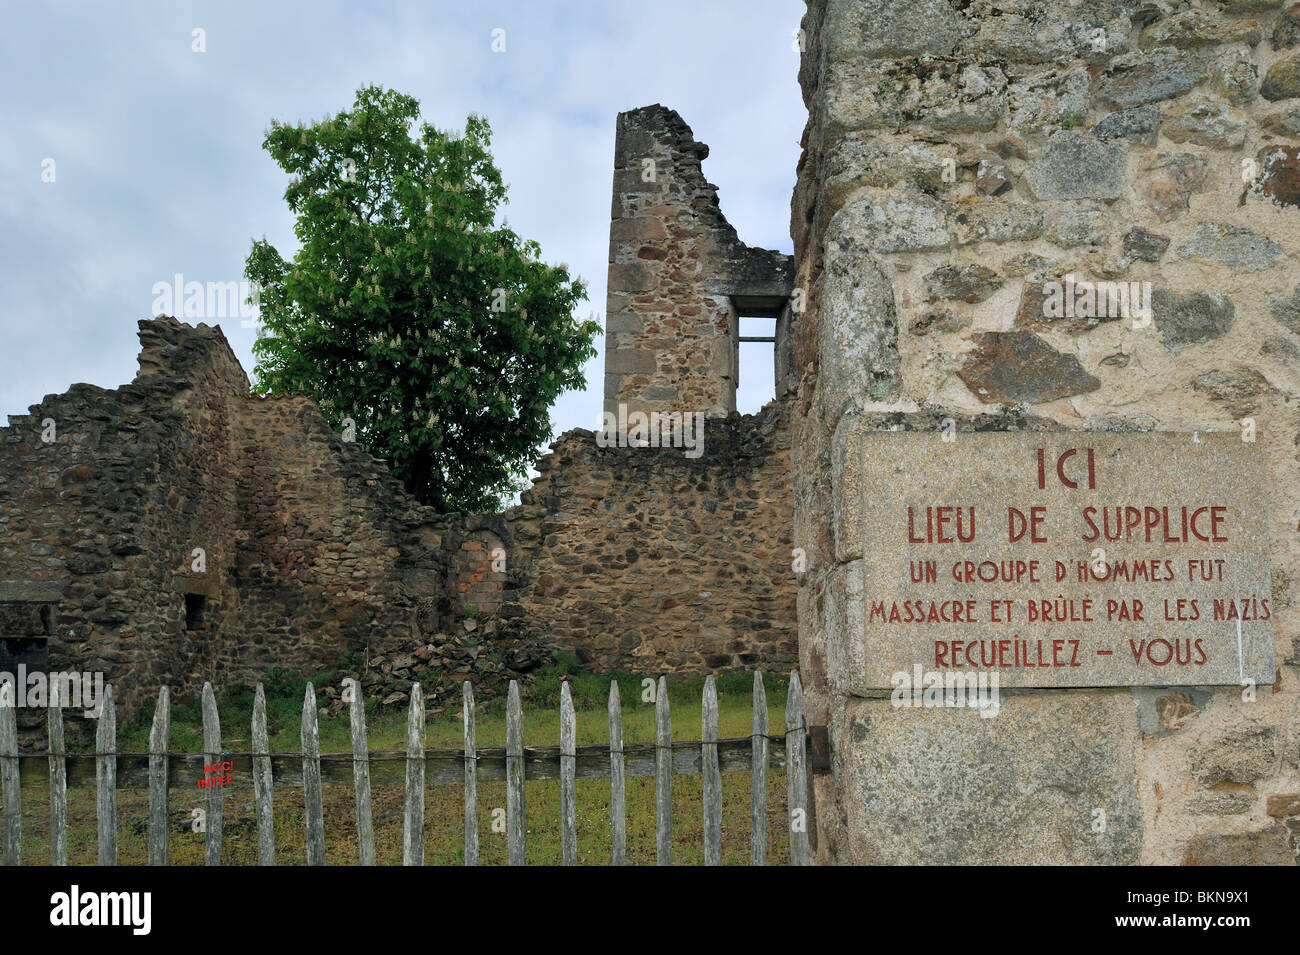 Oradour-Sur-Glane, wo am 10. Juni 1944 642 Einwohner von einem WW2 deutsche Waffen-SS-Unternehmen, Limousin, Frankreich massakriert wurden Stockfoto